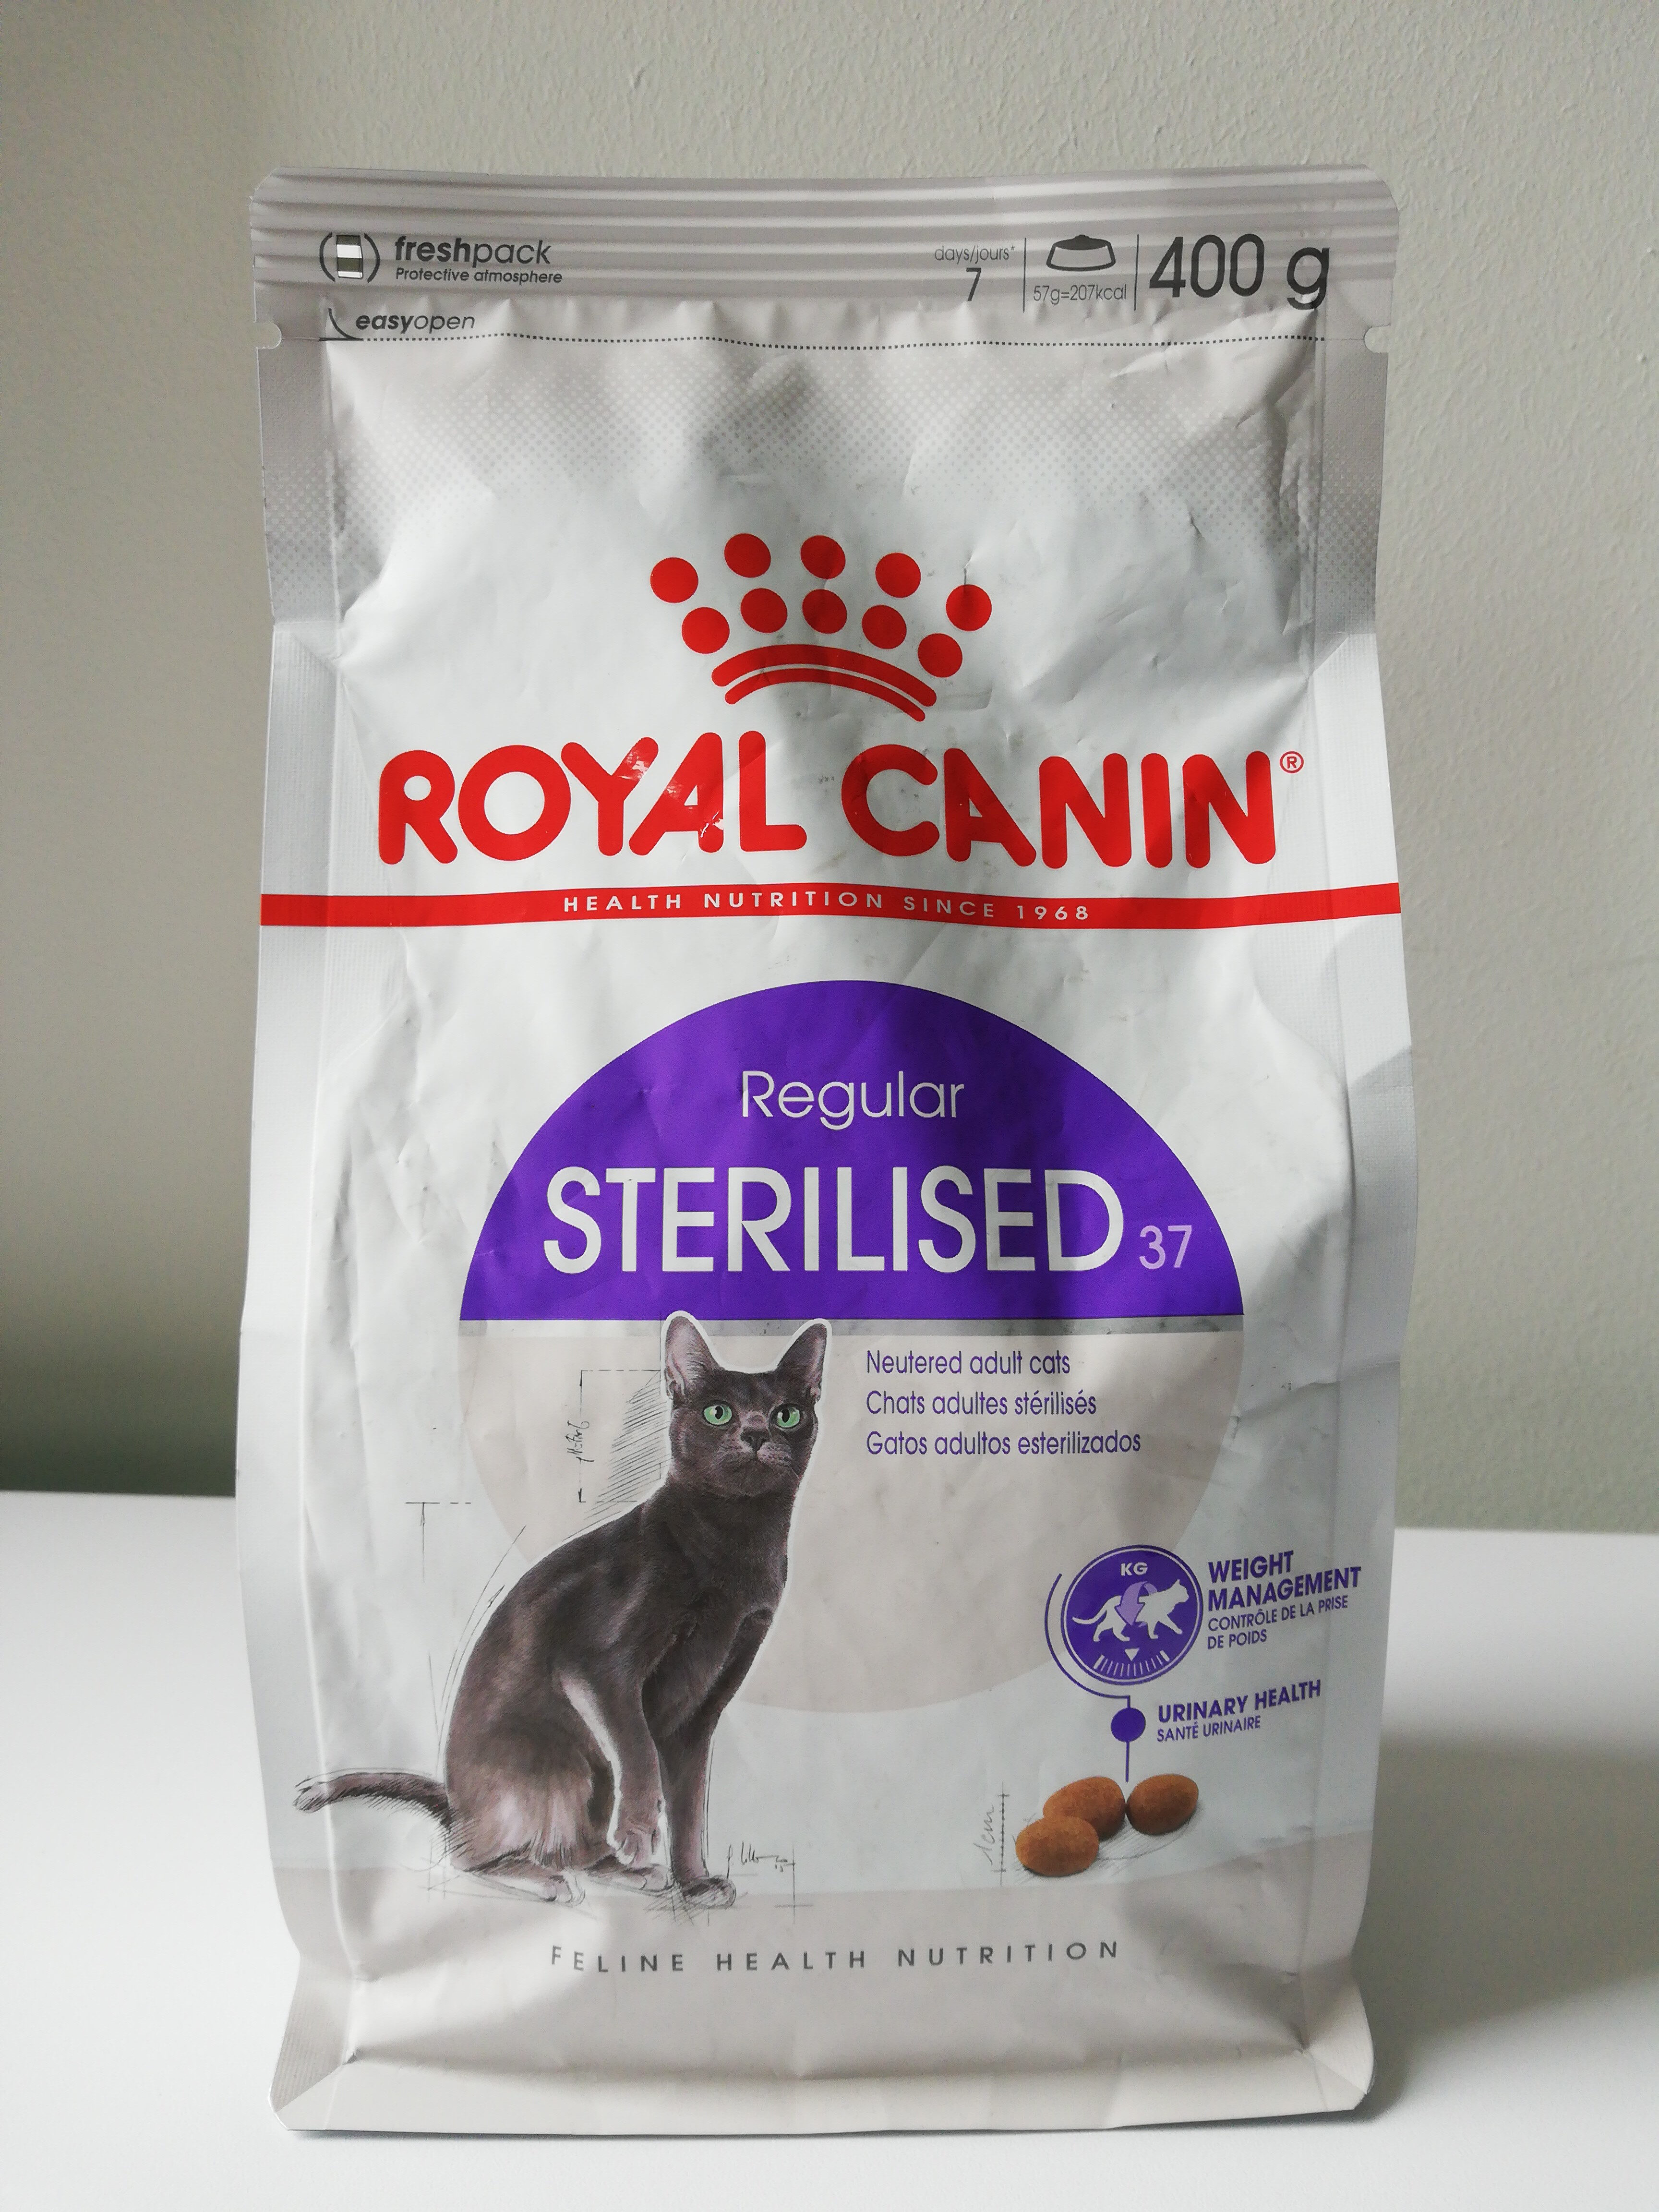 Royal Canin - Chat Stérilisé 37 400G - Product - fr